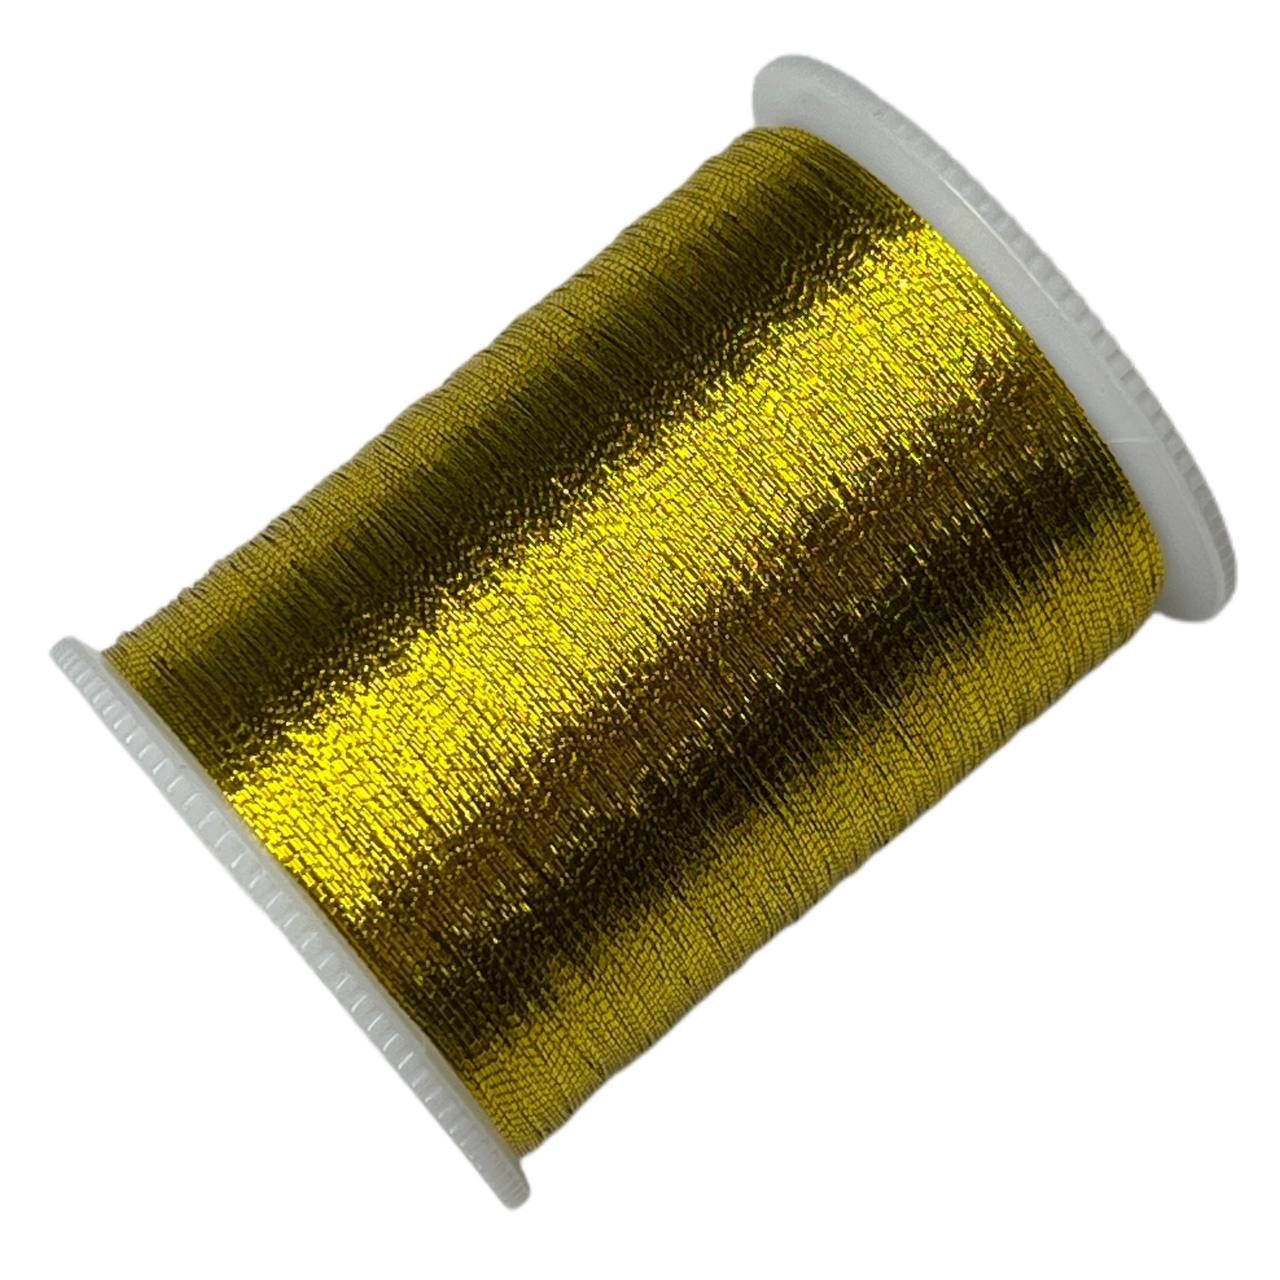 Gold Thread (on a Bobbin)